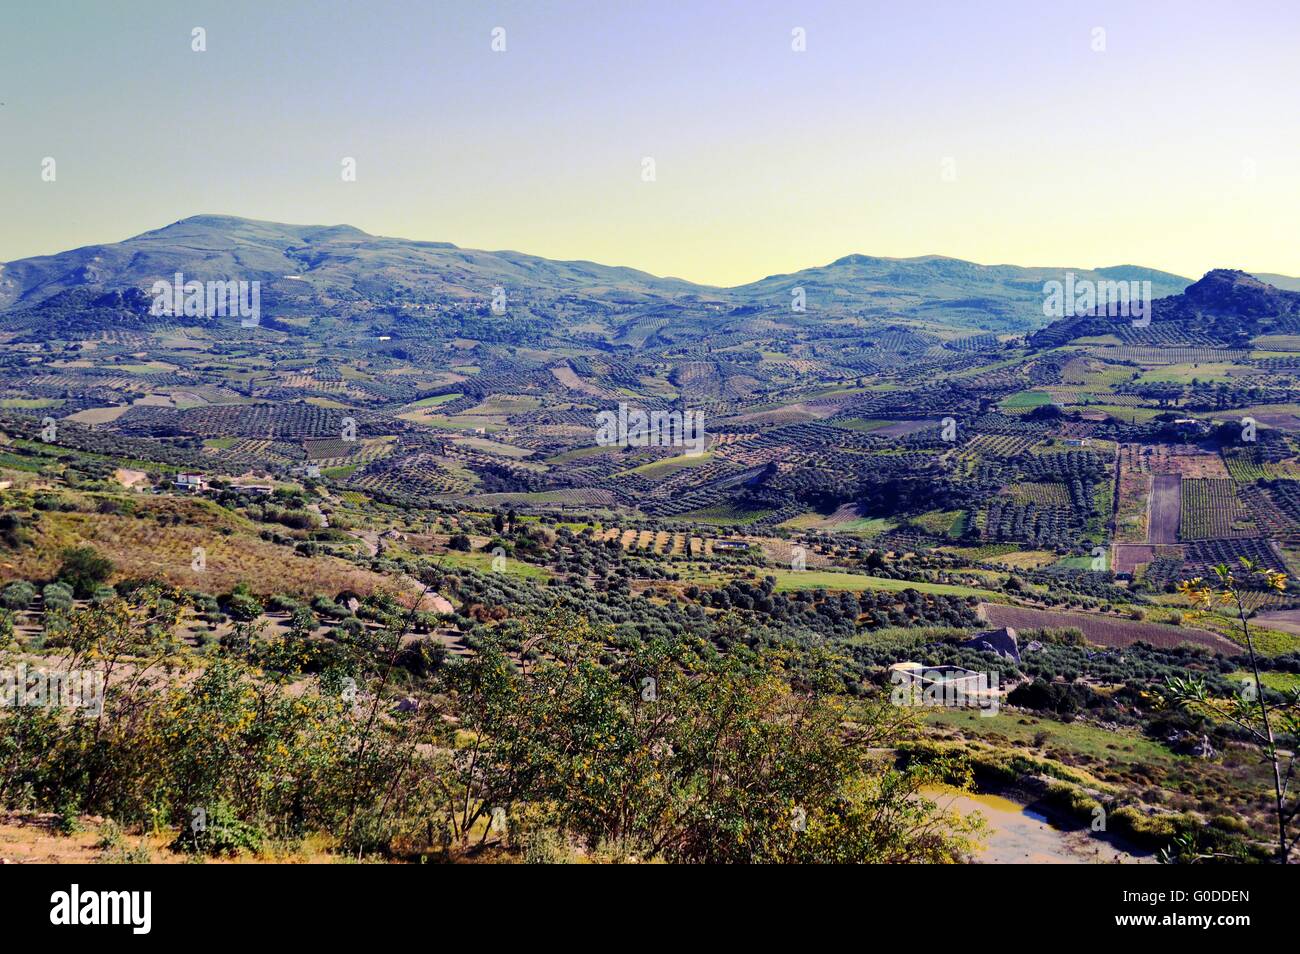 Eine Ansicht) auf eine Landschaft aus Kulturen von Olivenhainen und Weinbergen. Stockfoto